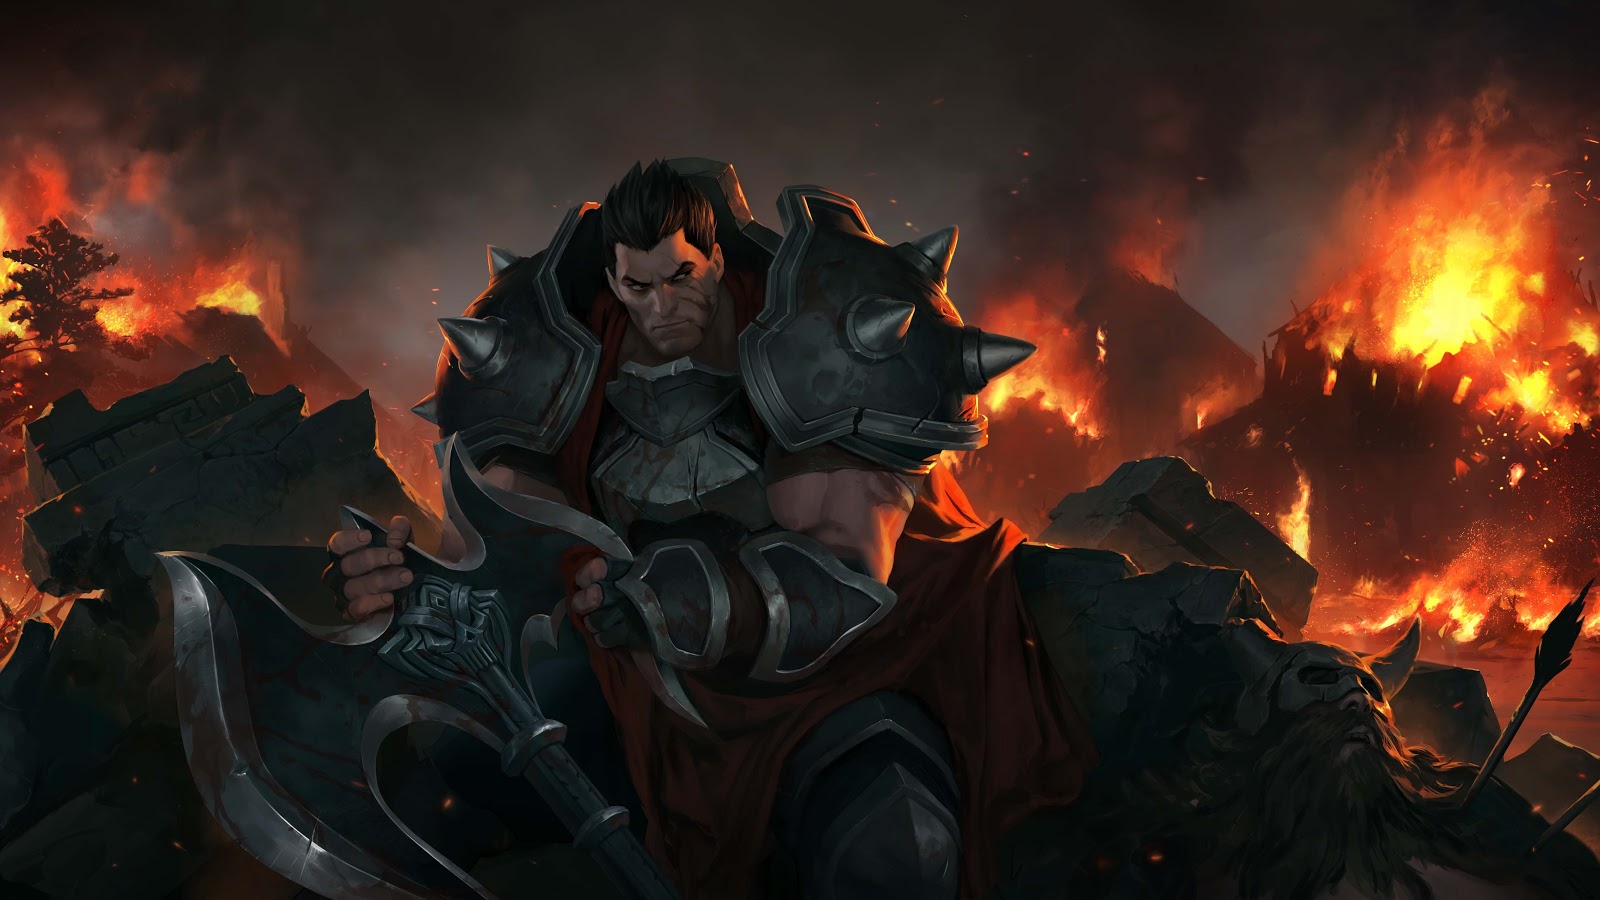 Darius siedzi pośród rumowiska, trzymając w dłoniach ostrze swojego topora i spoglądając na trawione ogniem ruiny za jego plecami.